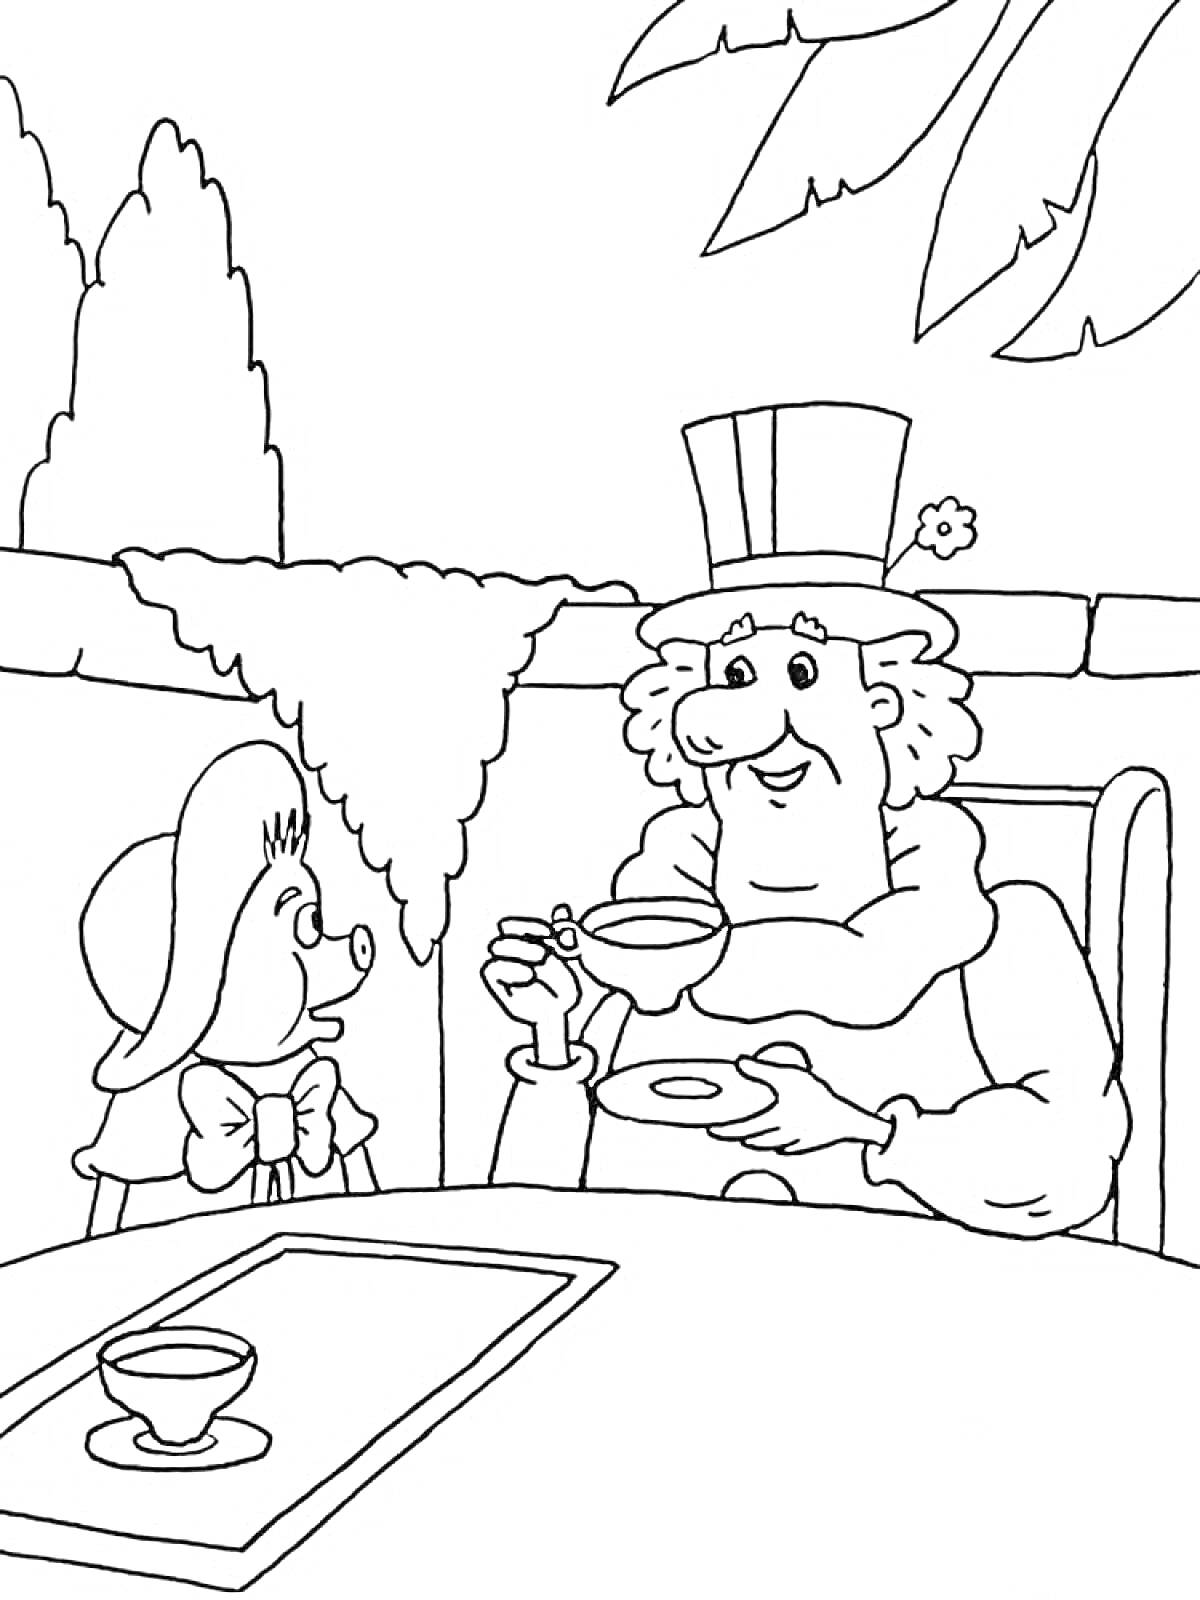 Фунтик и мужчина за столом на улице с чашками и блюдцами (под деревом)